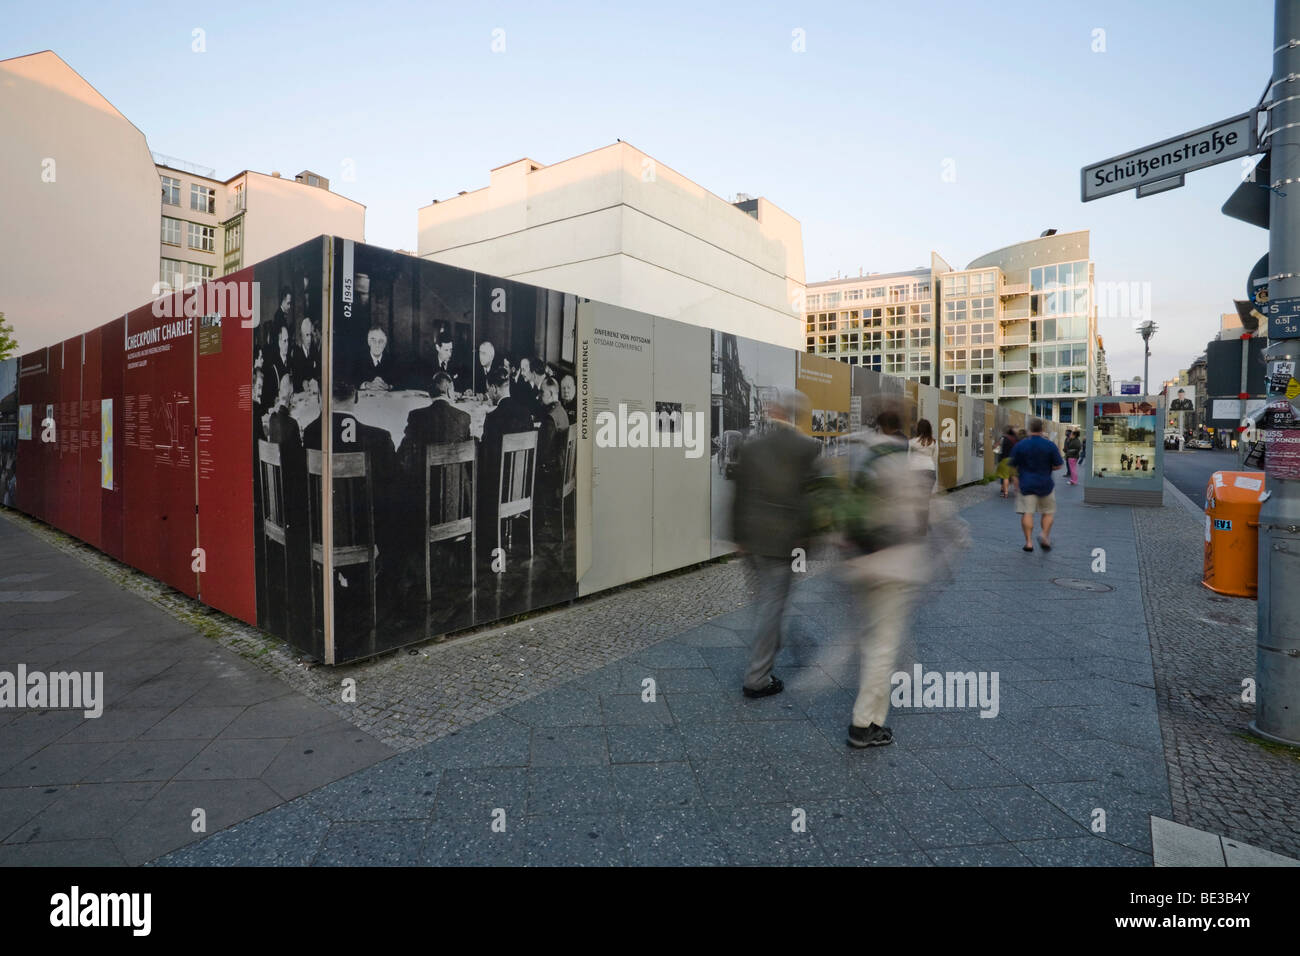 Ausstellung und Dokumentation über die Berliner Mauer, Checkpoint Charlie, Mitte Bezirk, Berlin, Deutschland, Europa Stockfoto